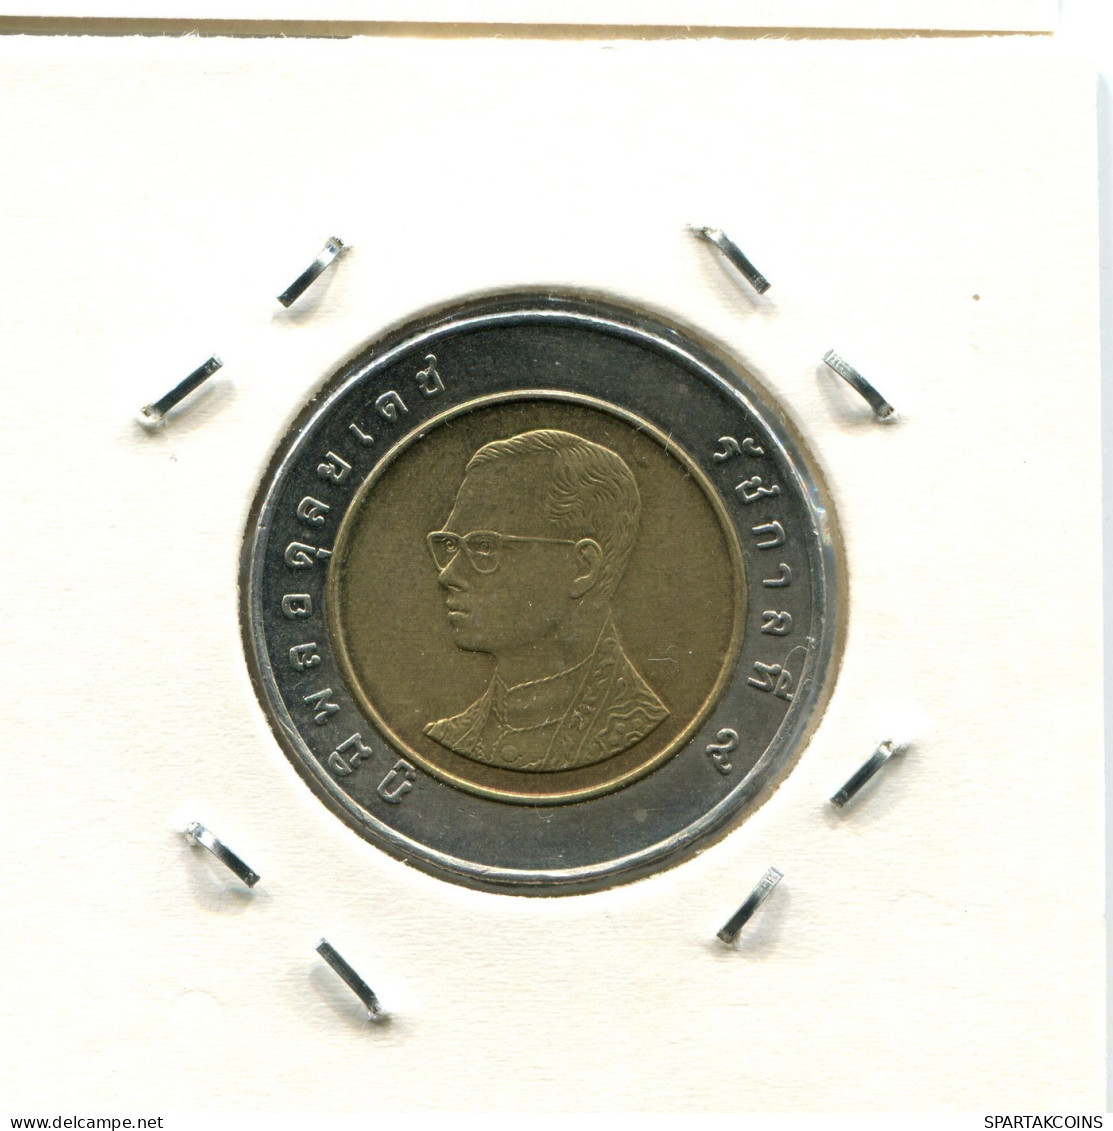 10 BAHT 2003 THAILAND RAMA IX BIMETALLIC Coin #AX273.U.A - Thaïlande